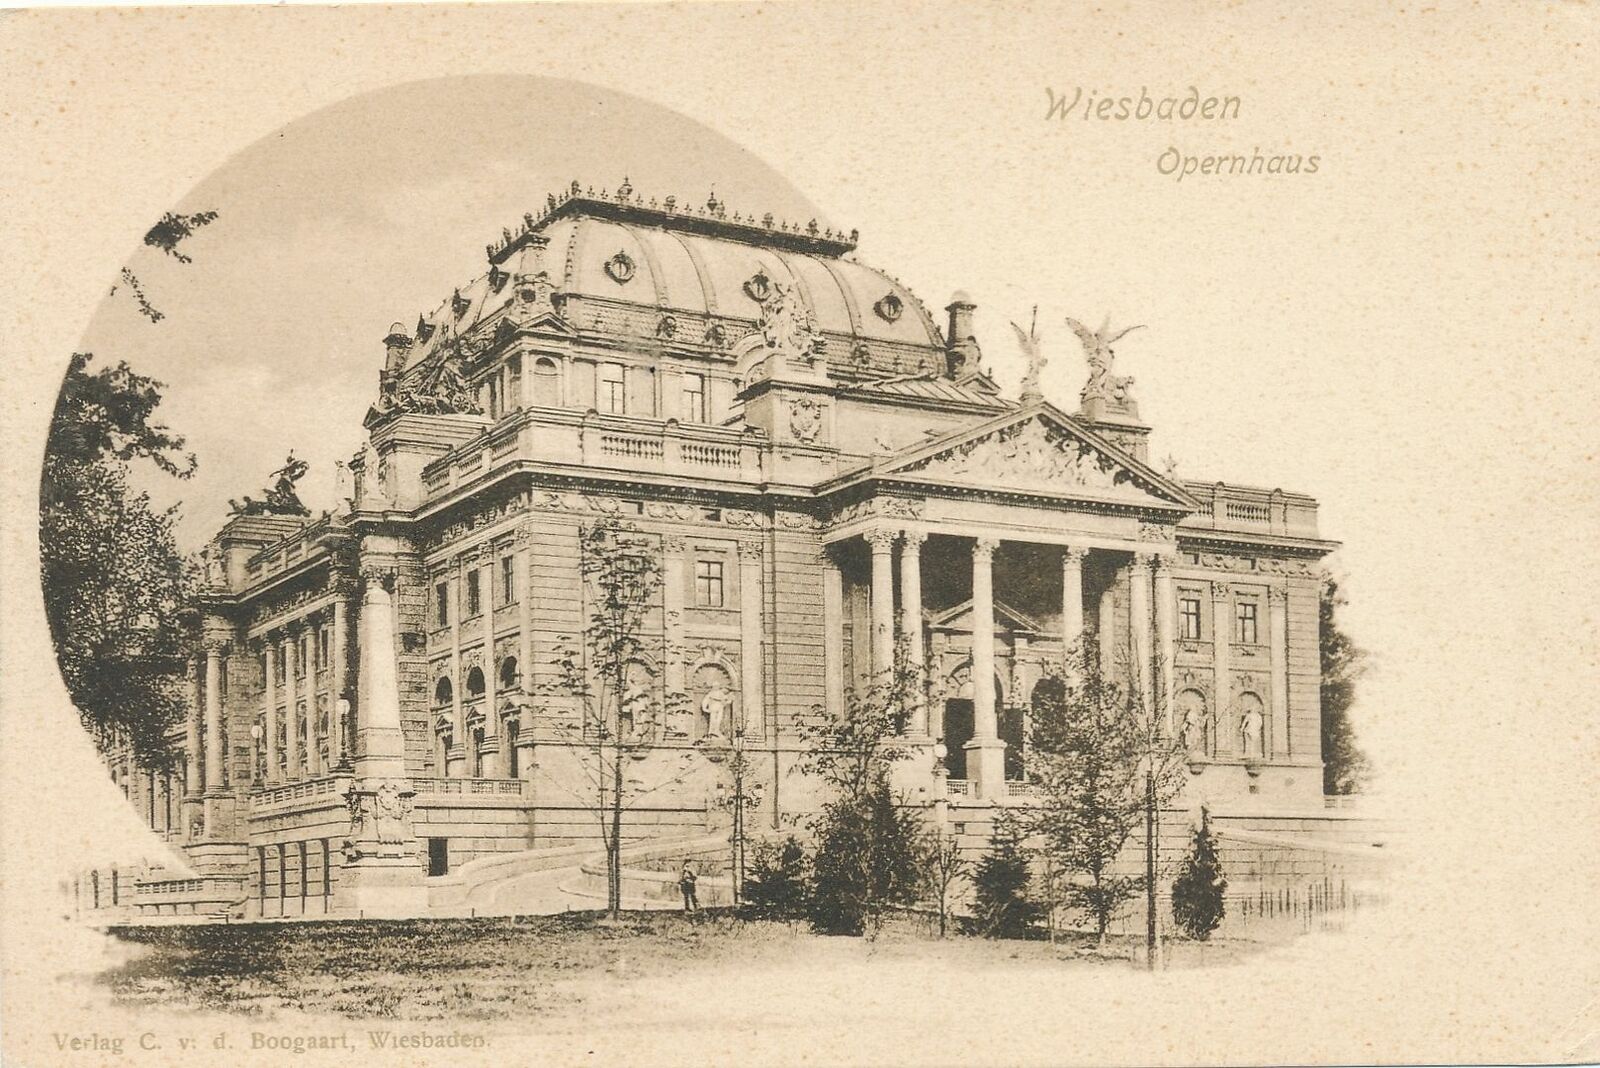 WIESBADEN - Opernhaus - Germany - udb (pre 1908)